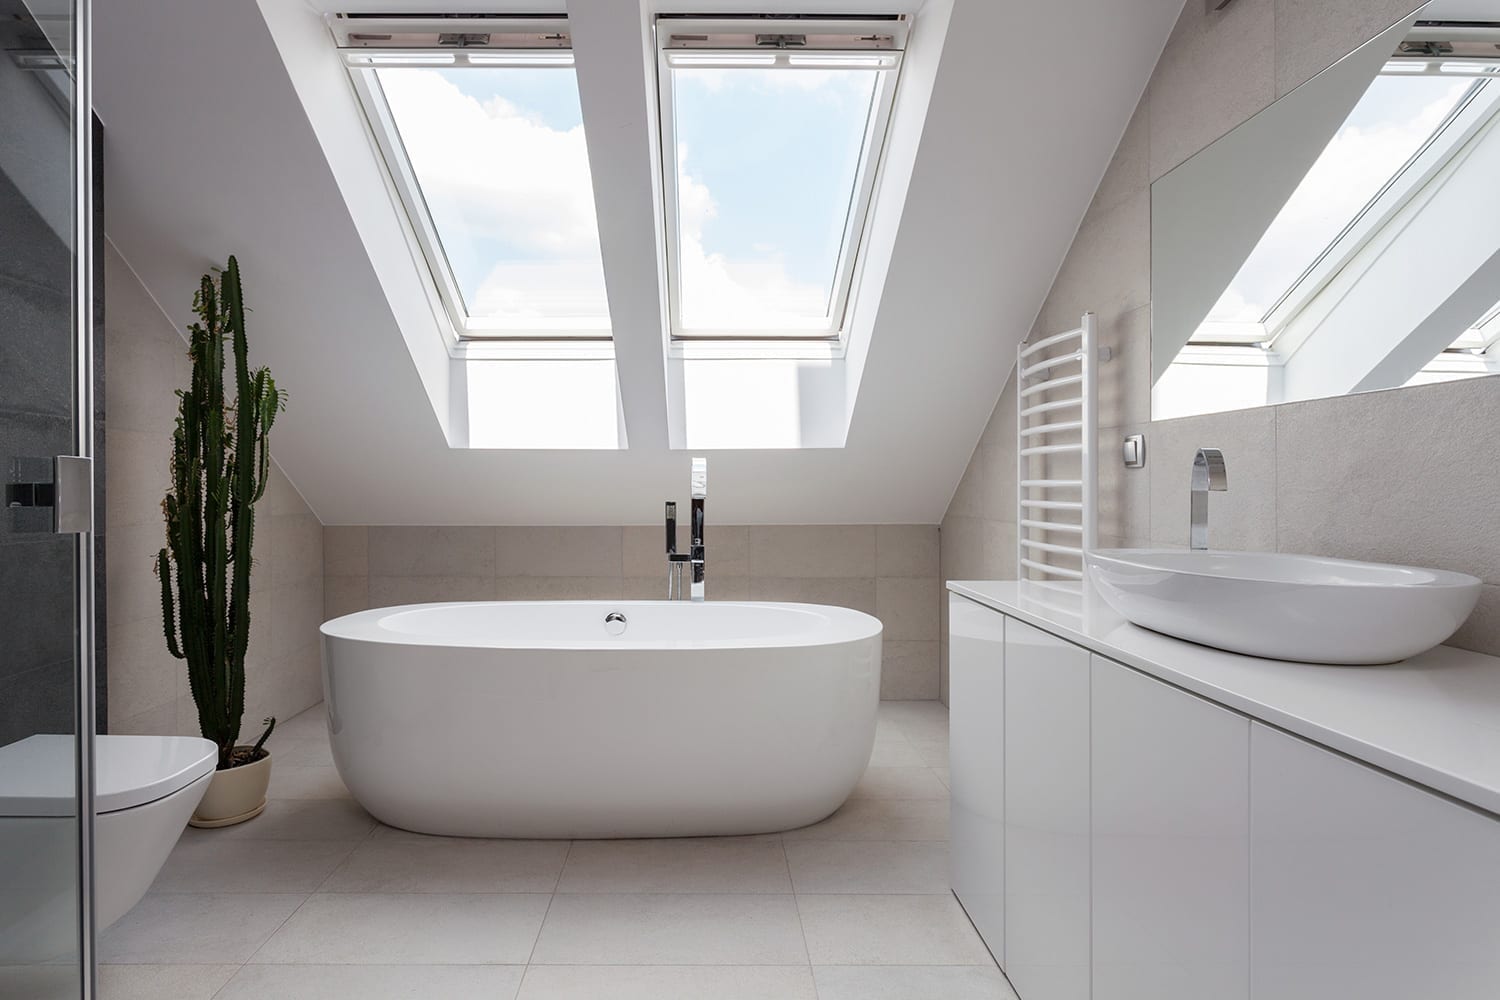 dos claraboyas en el techo de un baño blanco moderno